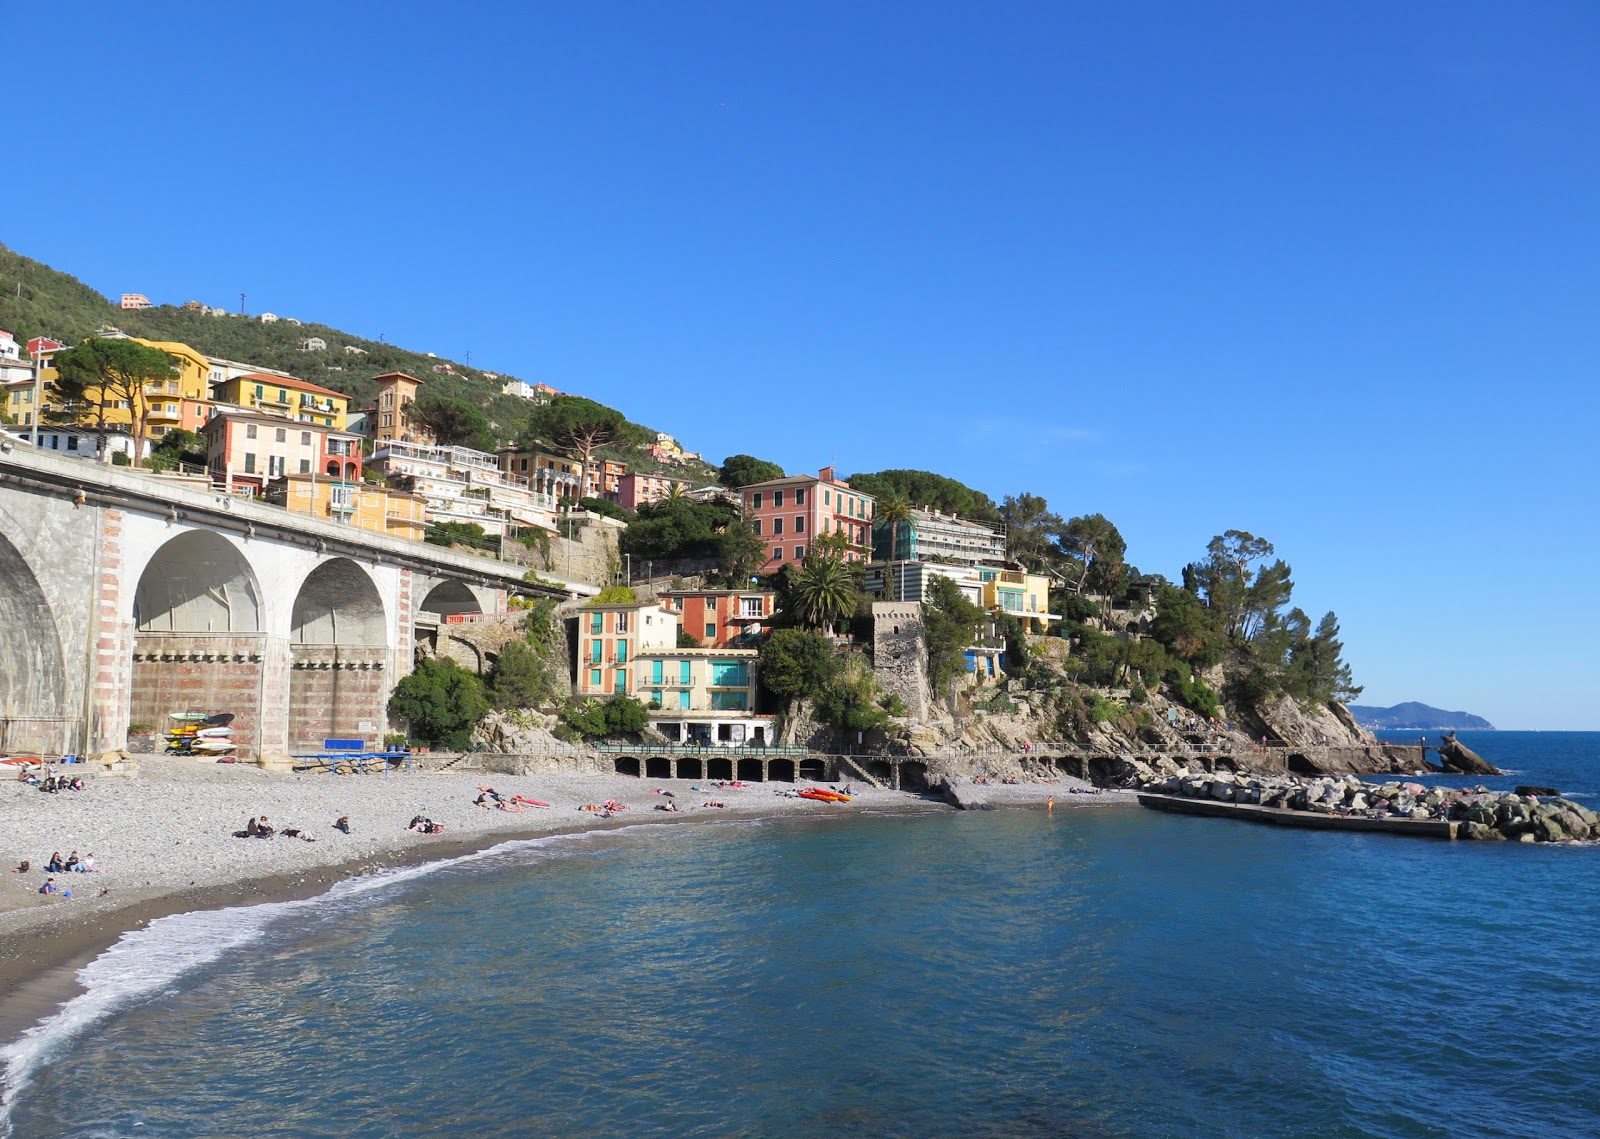 Spiaggia di Zoagli'in fotoğrafı gri çakıl taşı yüzey ile